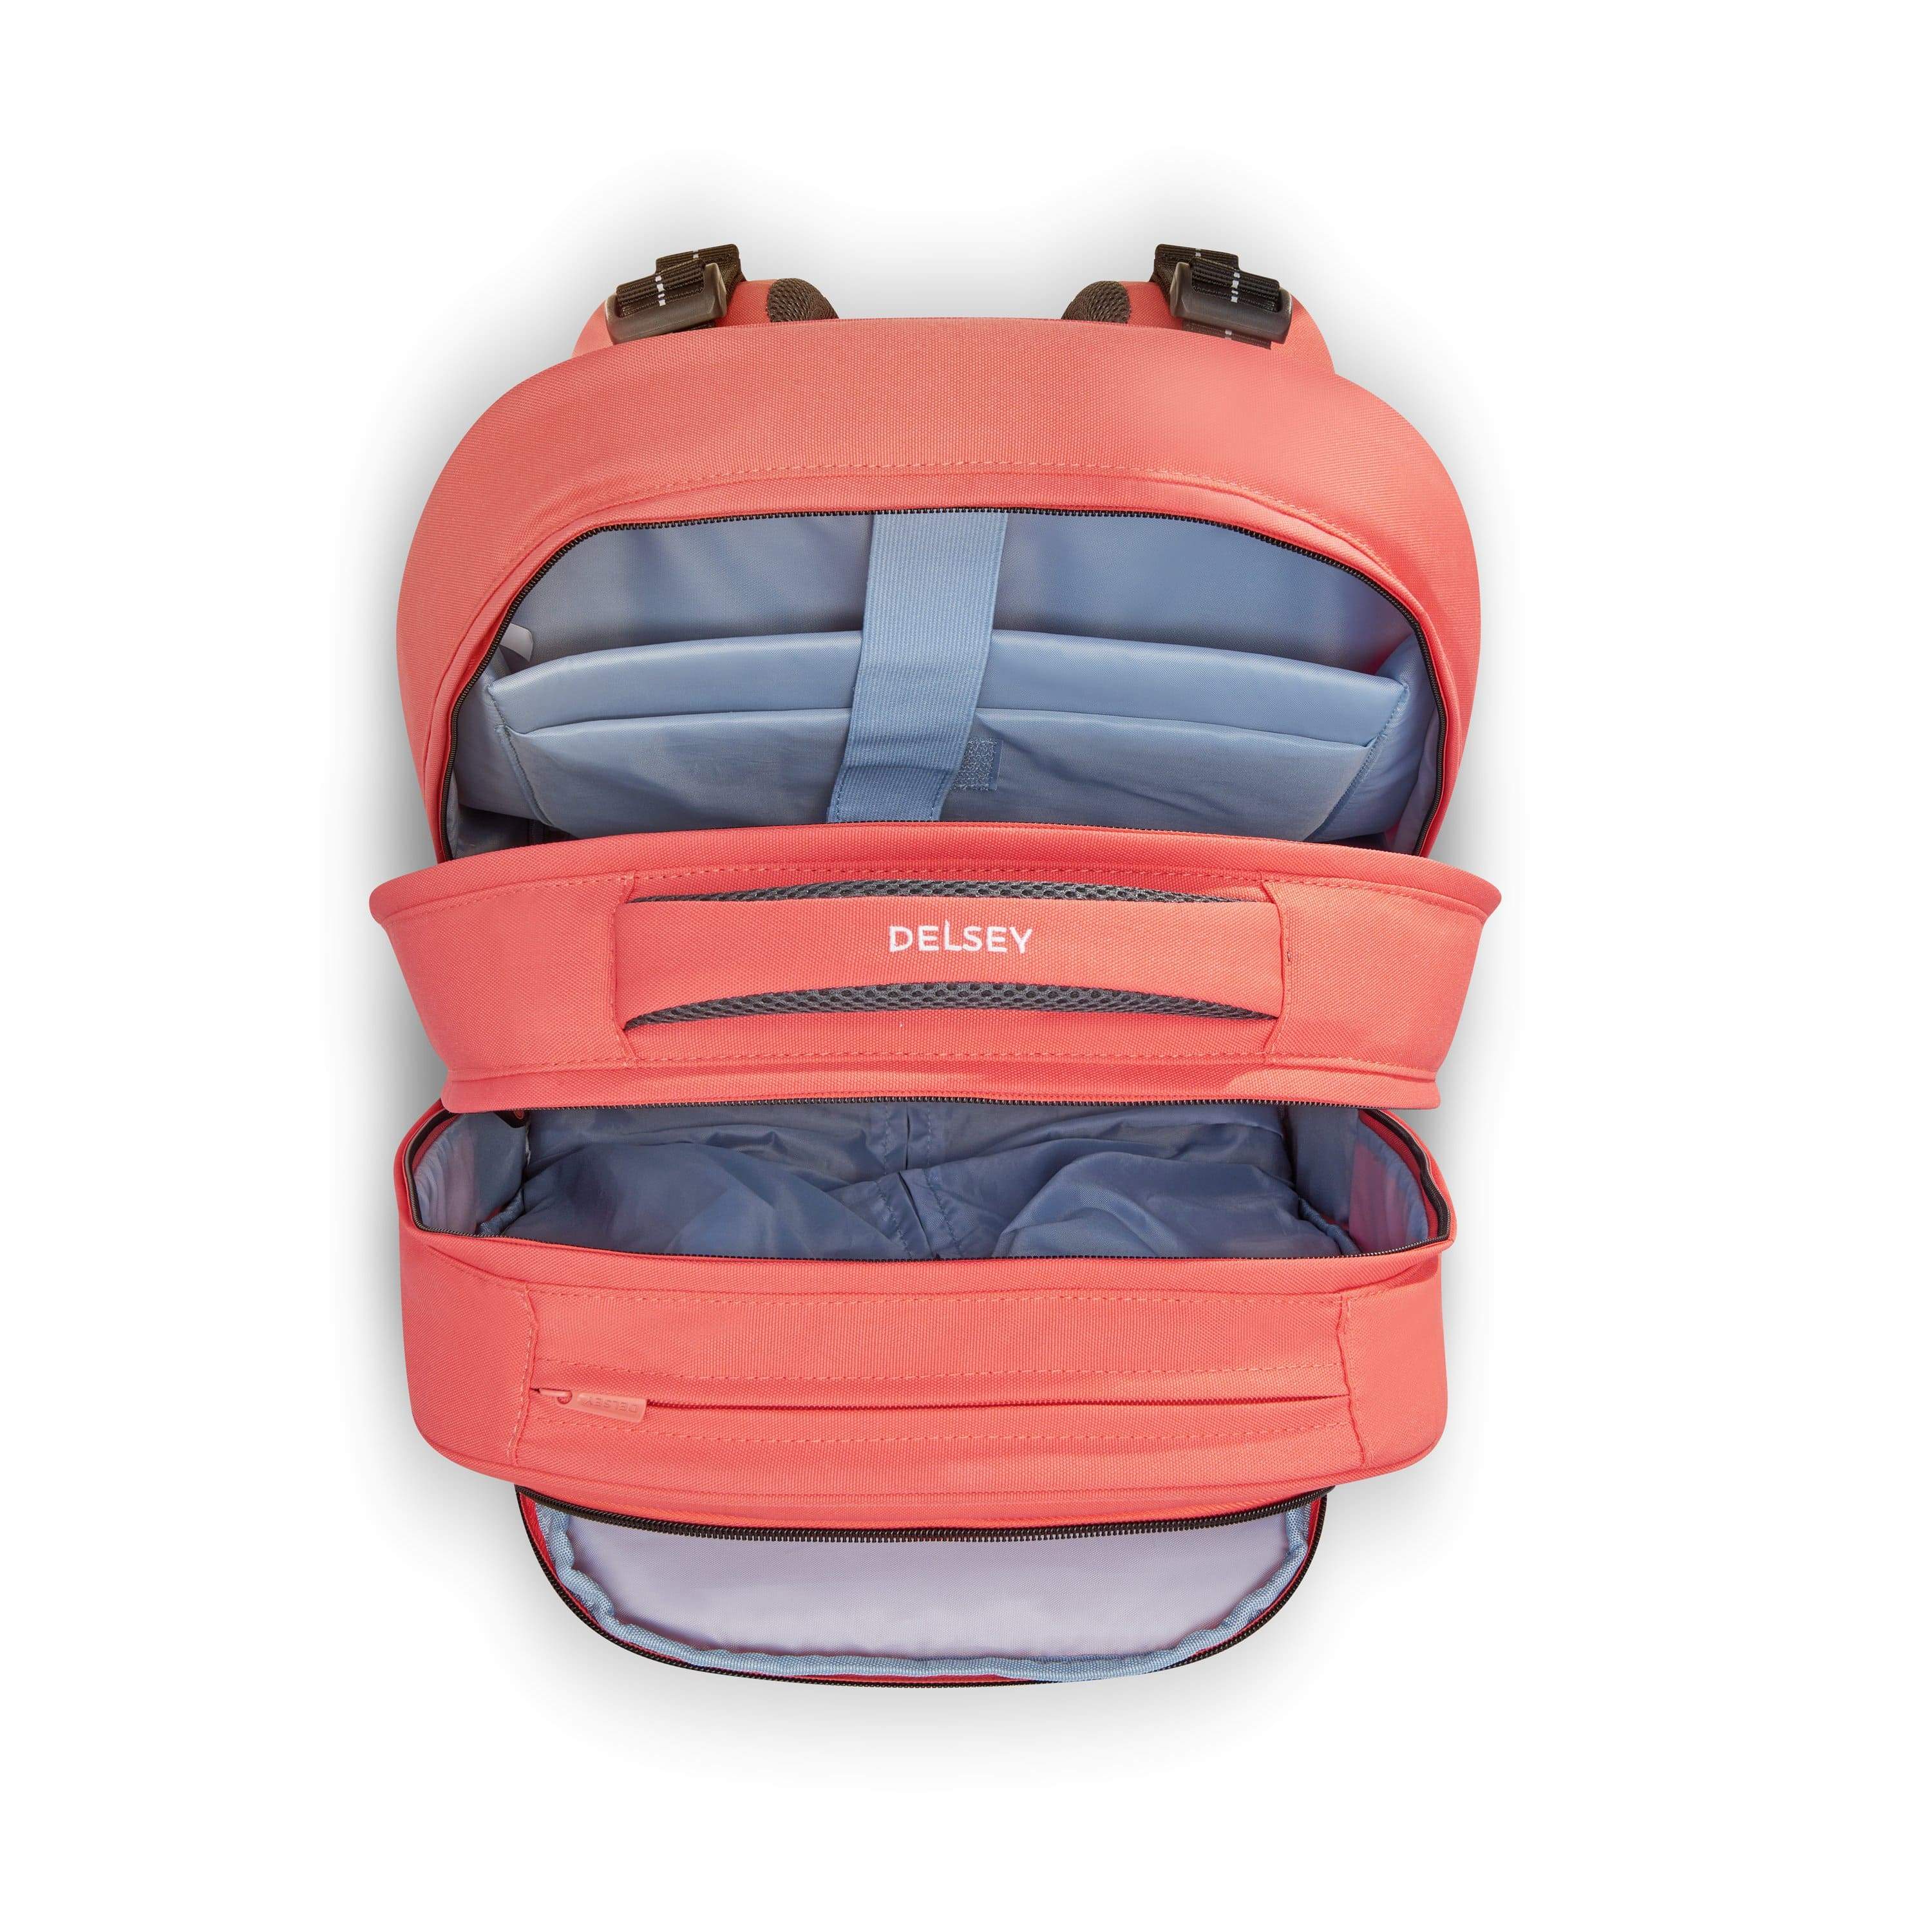 ديلسي BTS 2021 حقائب مدرسية عمودية ذات عجلات مرجانية / وردي